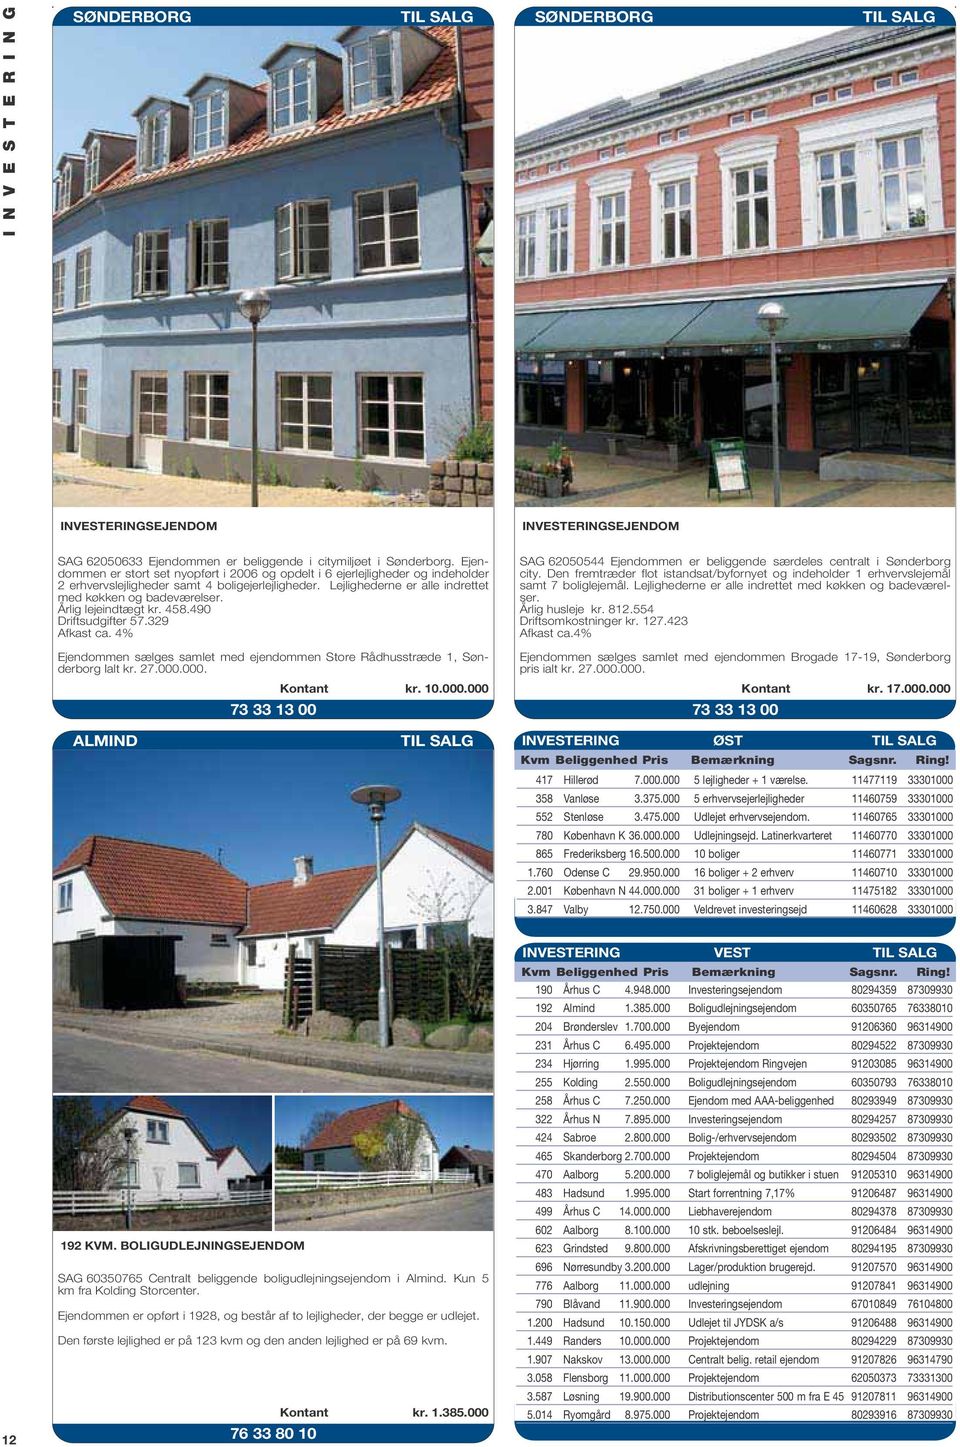 indtægt kr. 458.490 Driftsudgifter 57.329 Afkast ca. 4% Ejendommen sælges samlet med ejendommen Store Rådhusstræde 1, Sønderborg Ialt kr. 27.000.